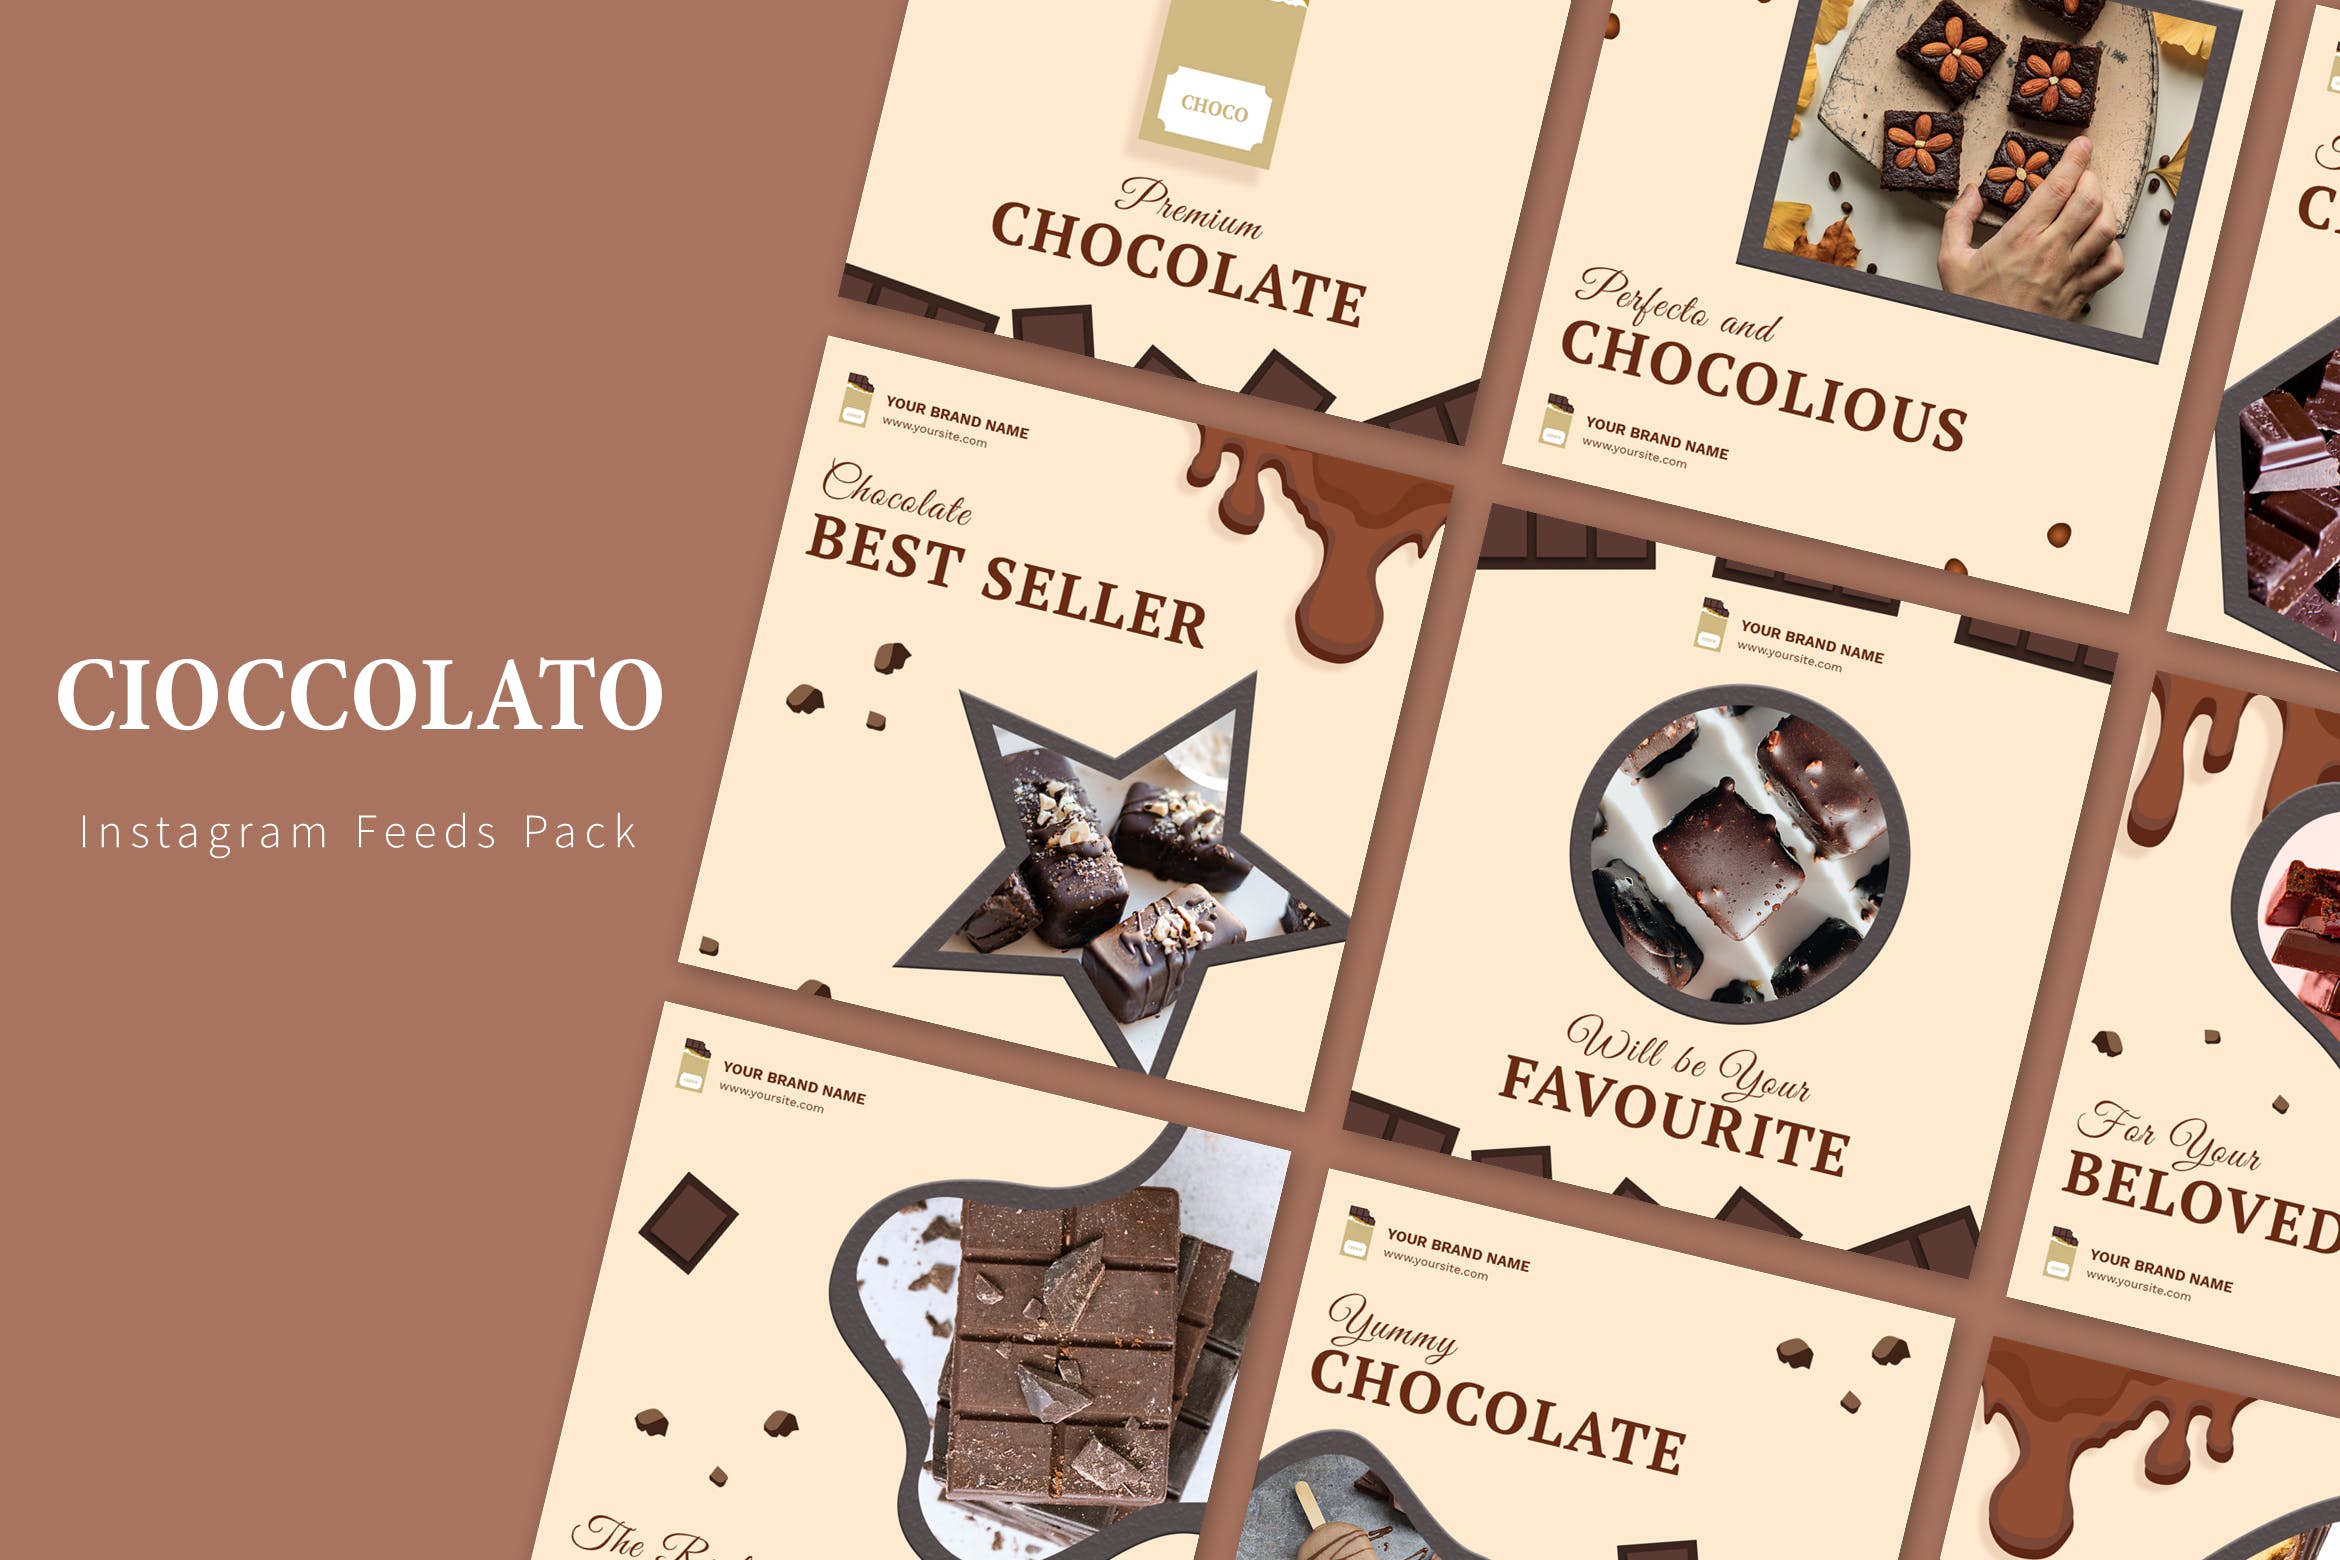 巧克力品牌营销Instagram社交信息流广告模板第一素材精选 Cioccolato – Instagram Feeds Pack插图